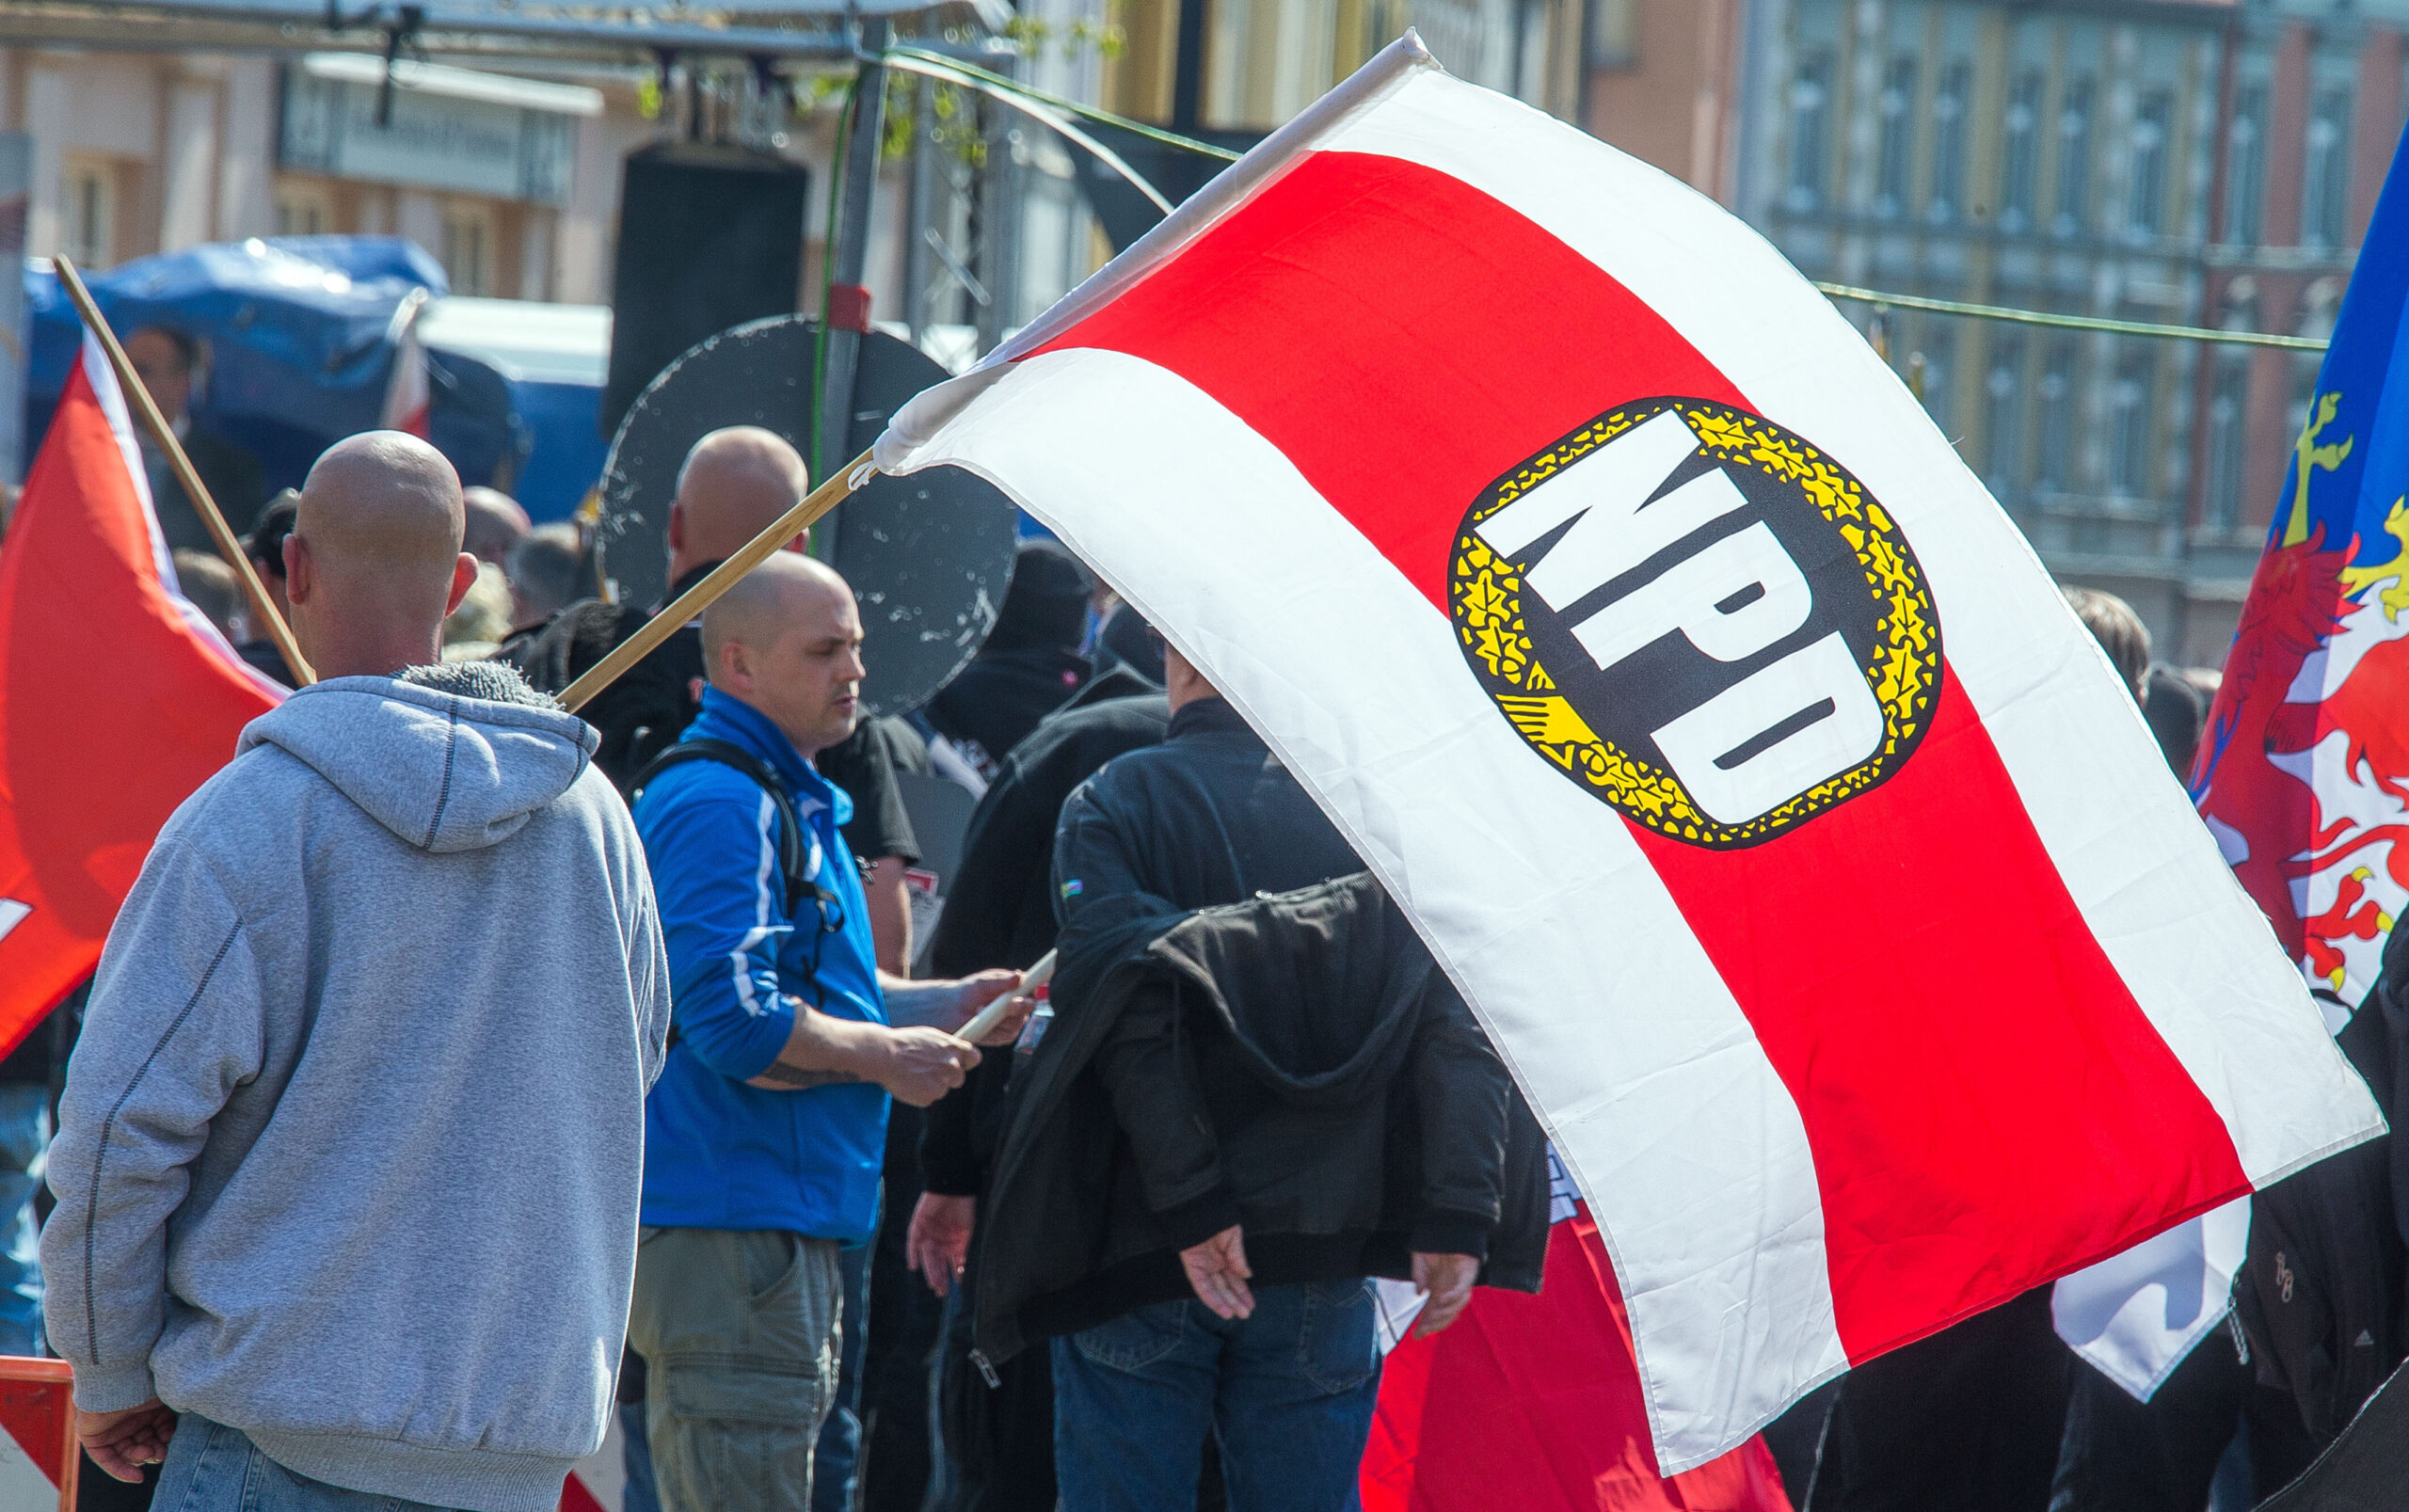 Teilnehmer einer Kundgebung der NPD in der Innenstadt von Schwerin halten Fahnen mit dem Parteilogo in der Hand. (Archivbild)